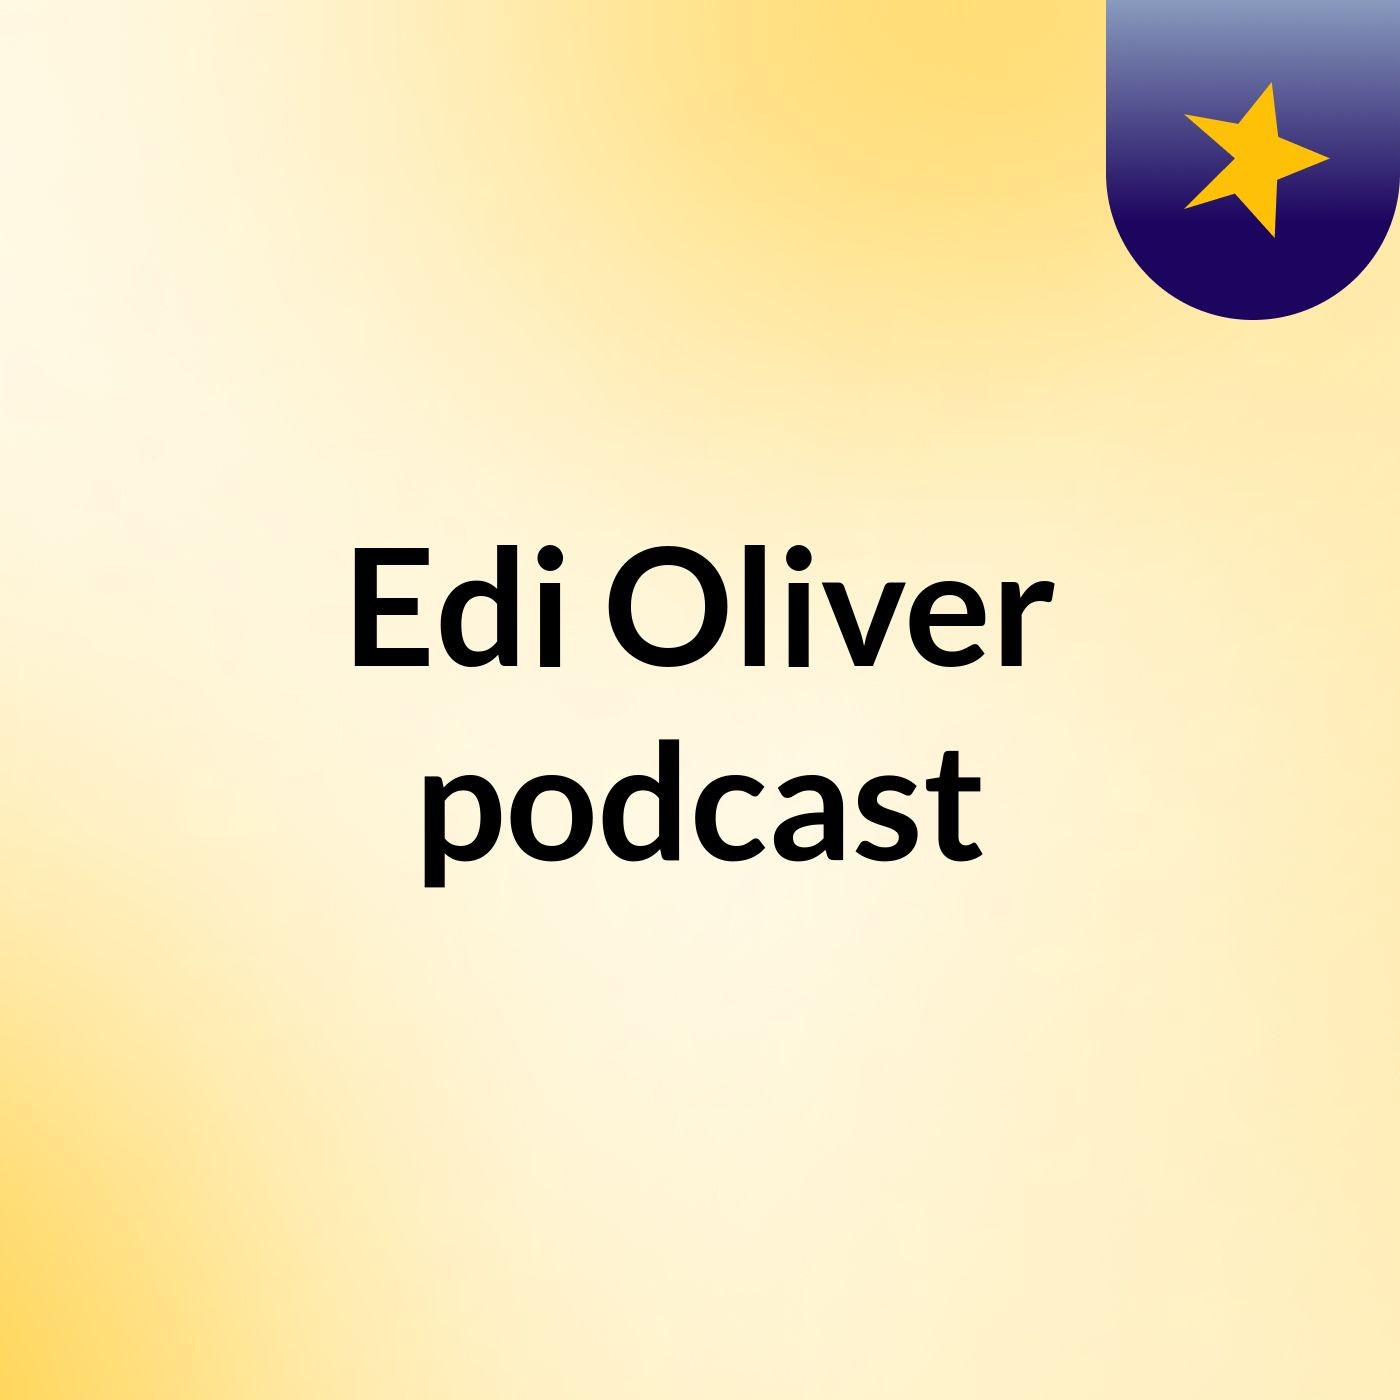 Edi Oliver podcast